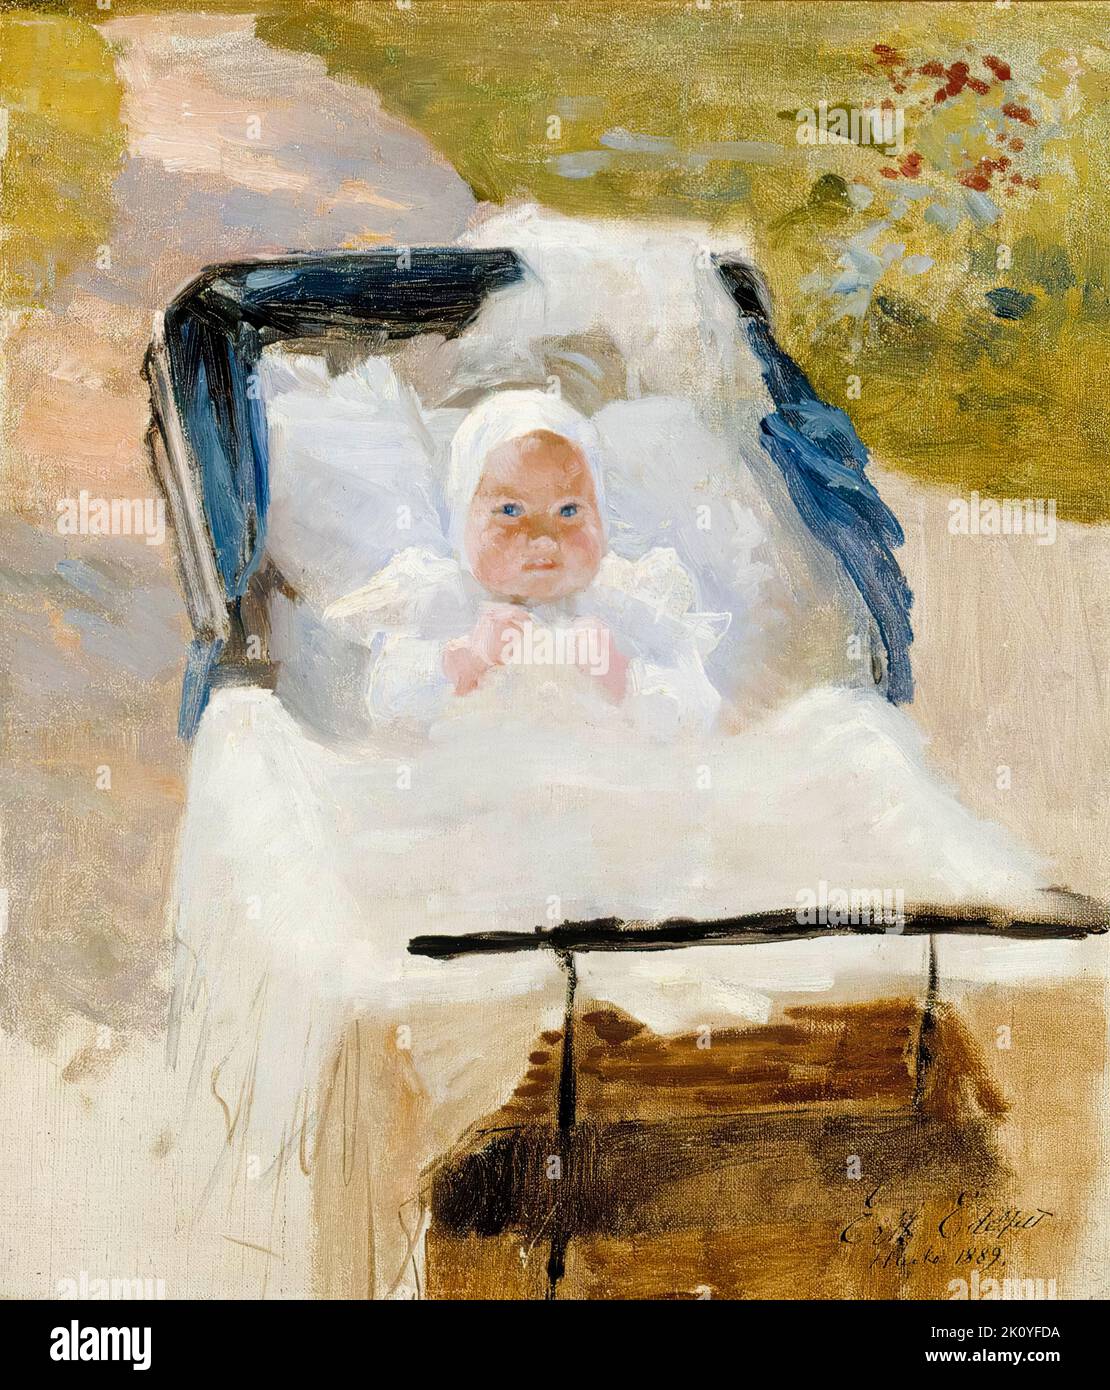 Albert Edelfelt, il Figlio dell’artista Erik in Una PRAM, ritratto dipinto ad olio su tela, 1889 Foto Stock